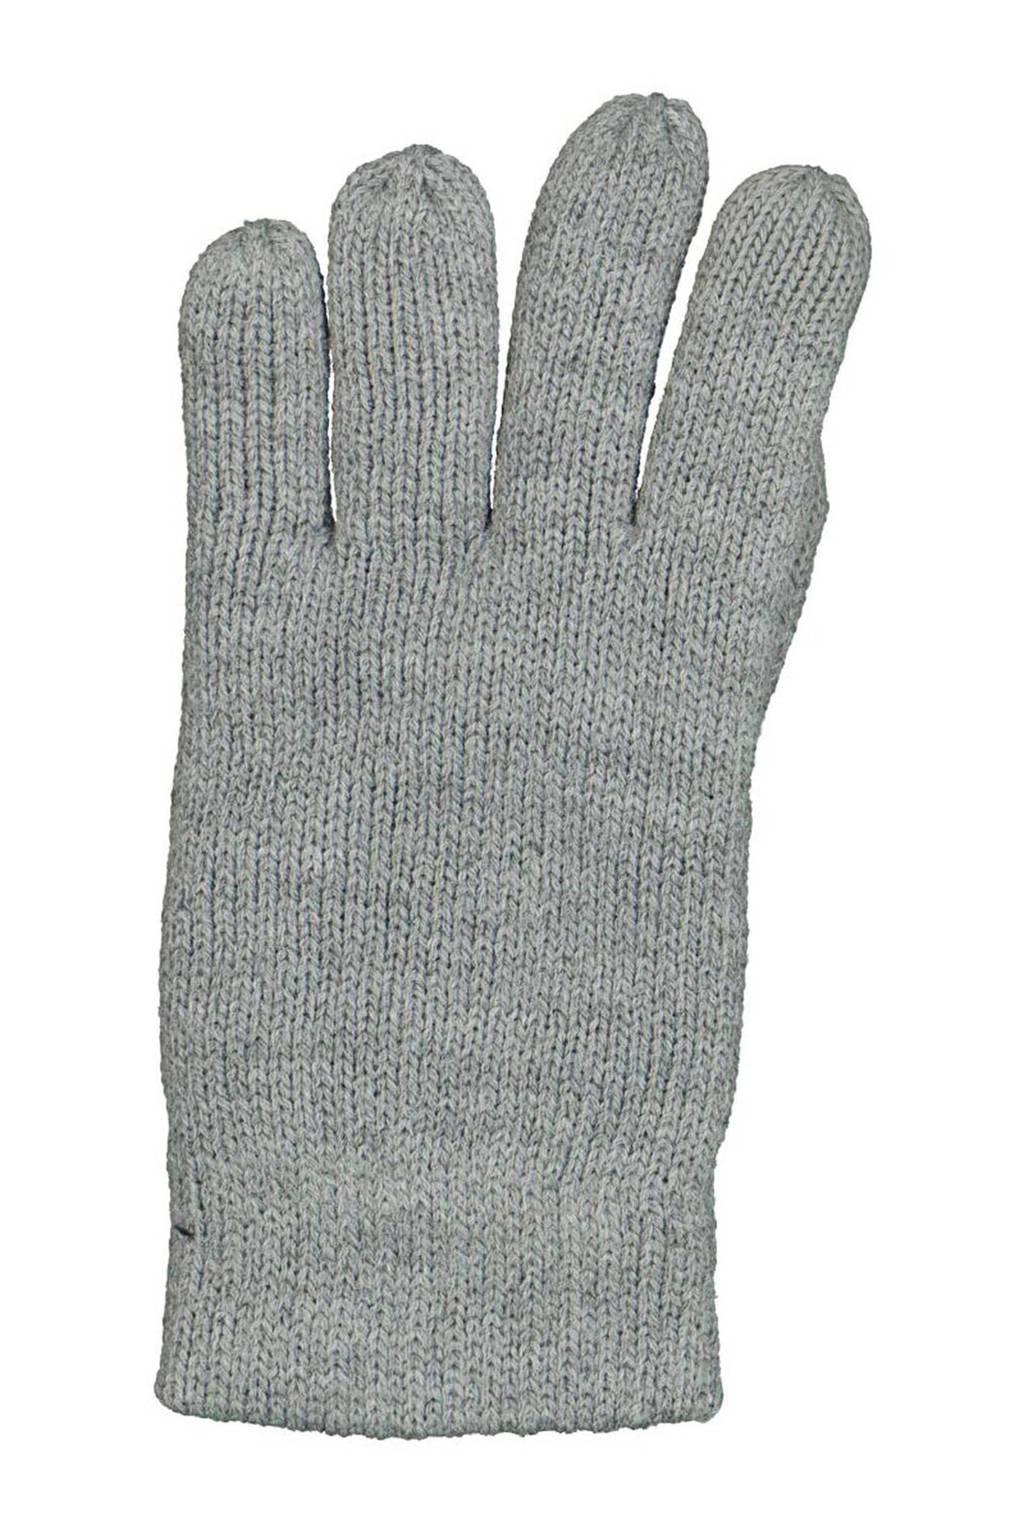 ontploffing Iets cliënt HEMA kinder handschoenen touchscreen grijsmelange | wehkamp